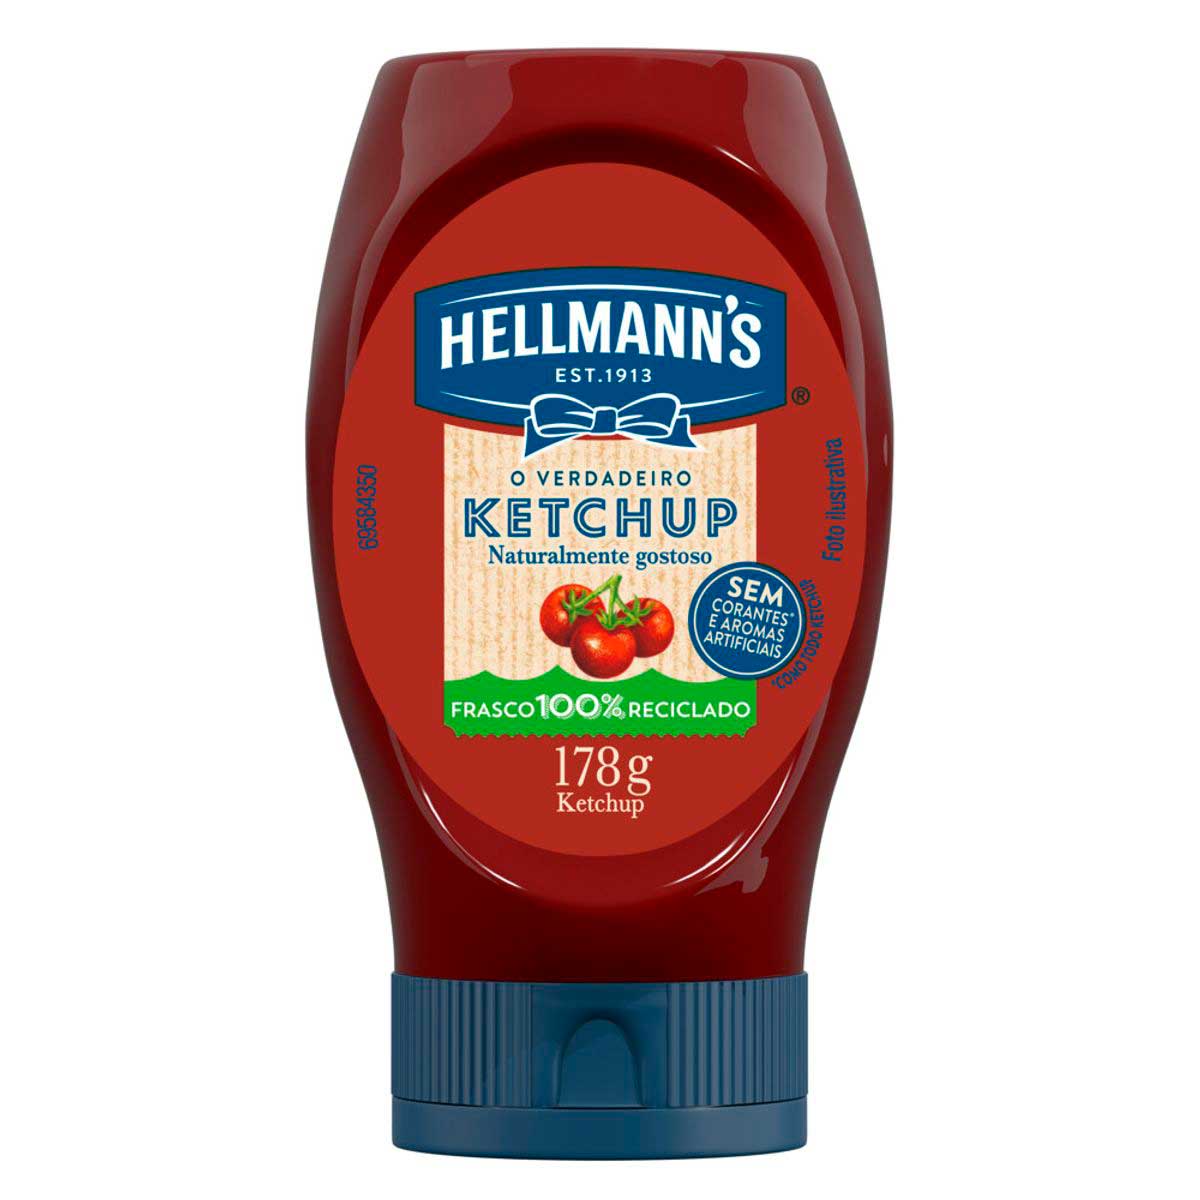 ketchup-hellmann's-tradicional-178g-1.jpg